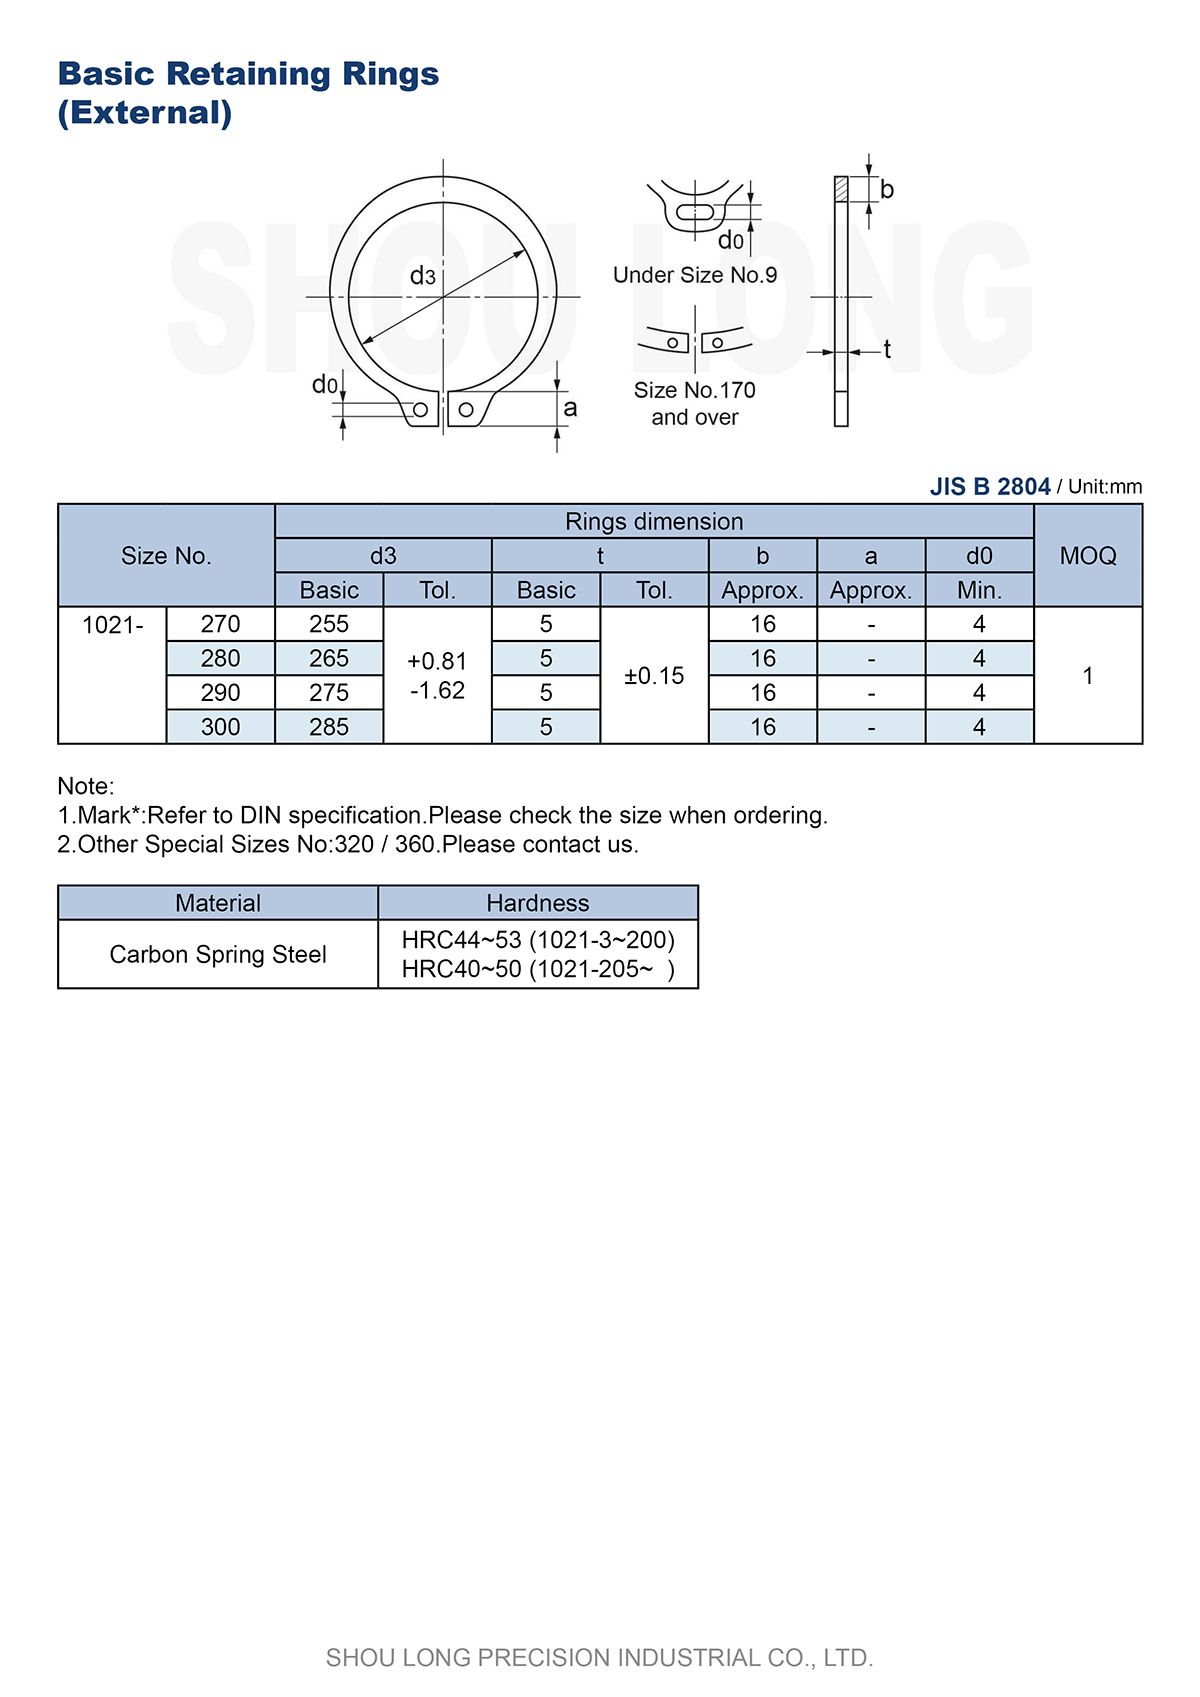 Especificação de Anéis de Retenção Básicos Métricos JIS para Eixo B2804-4